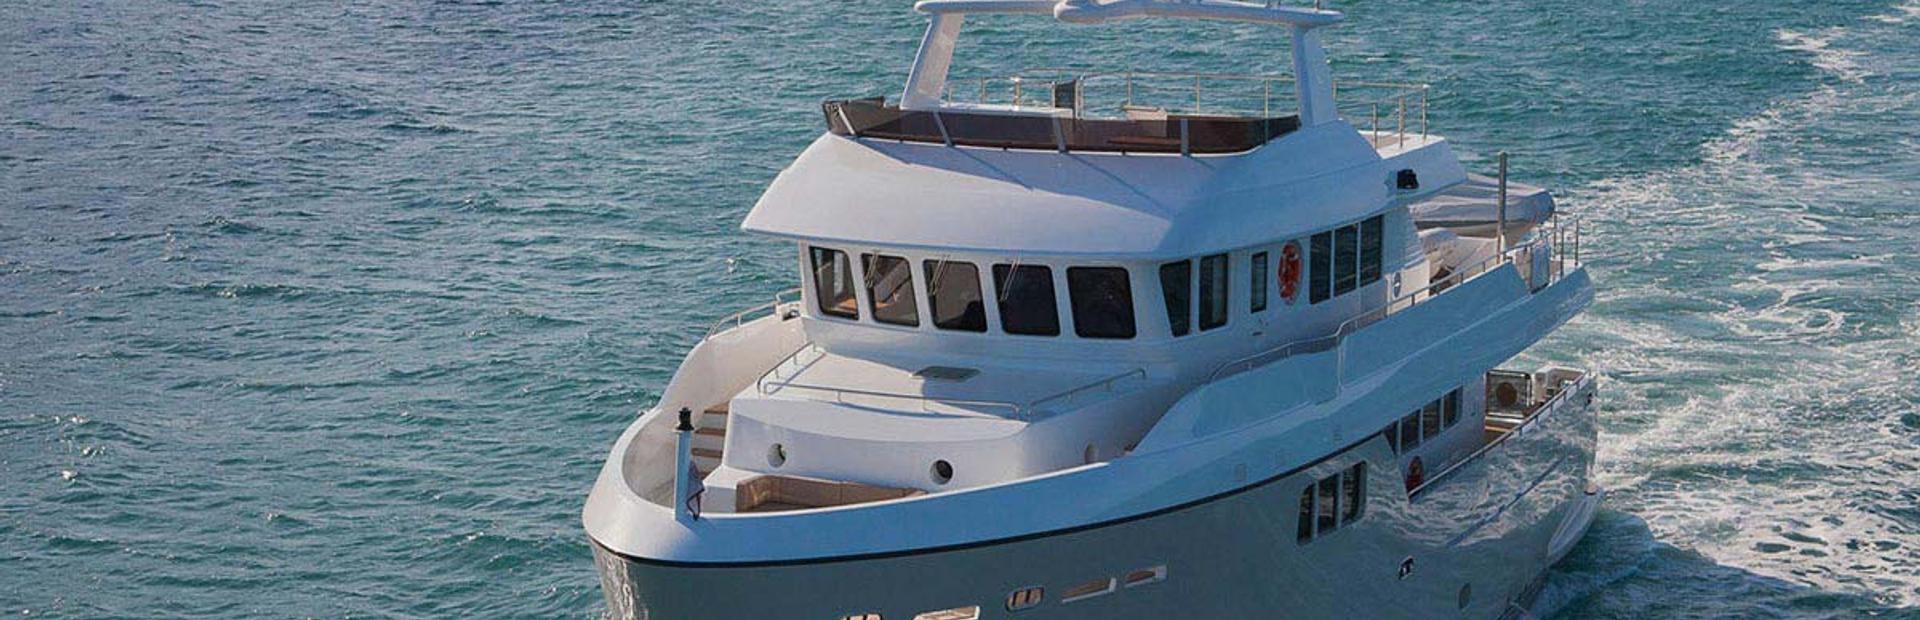 Darwin 86 Yacht